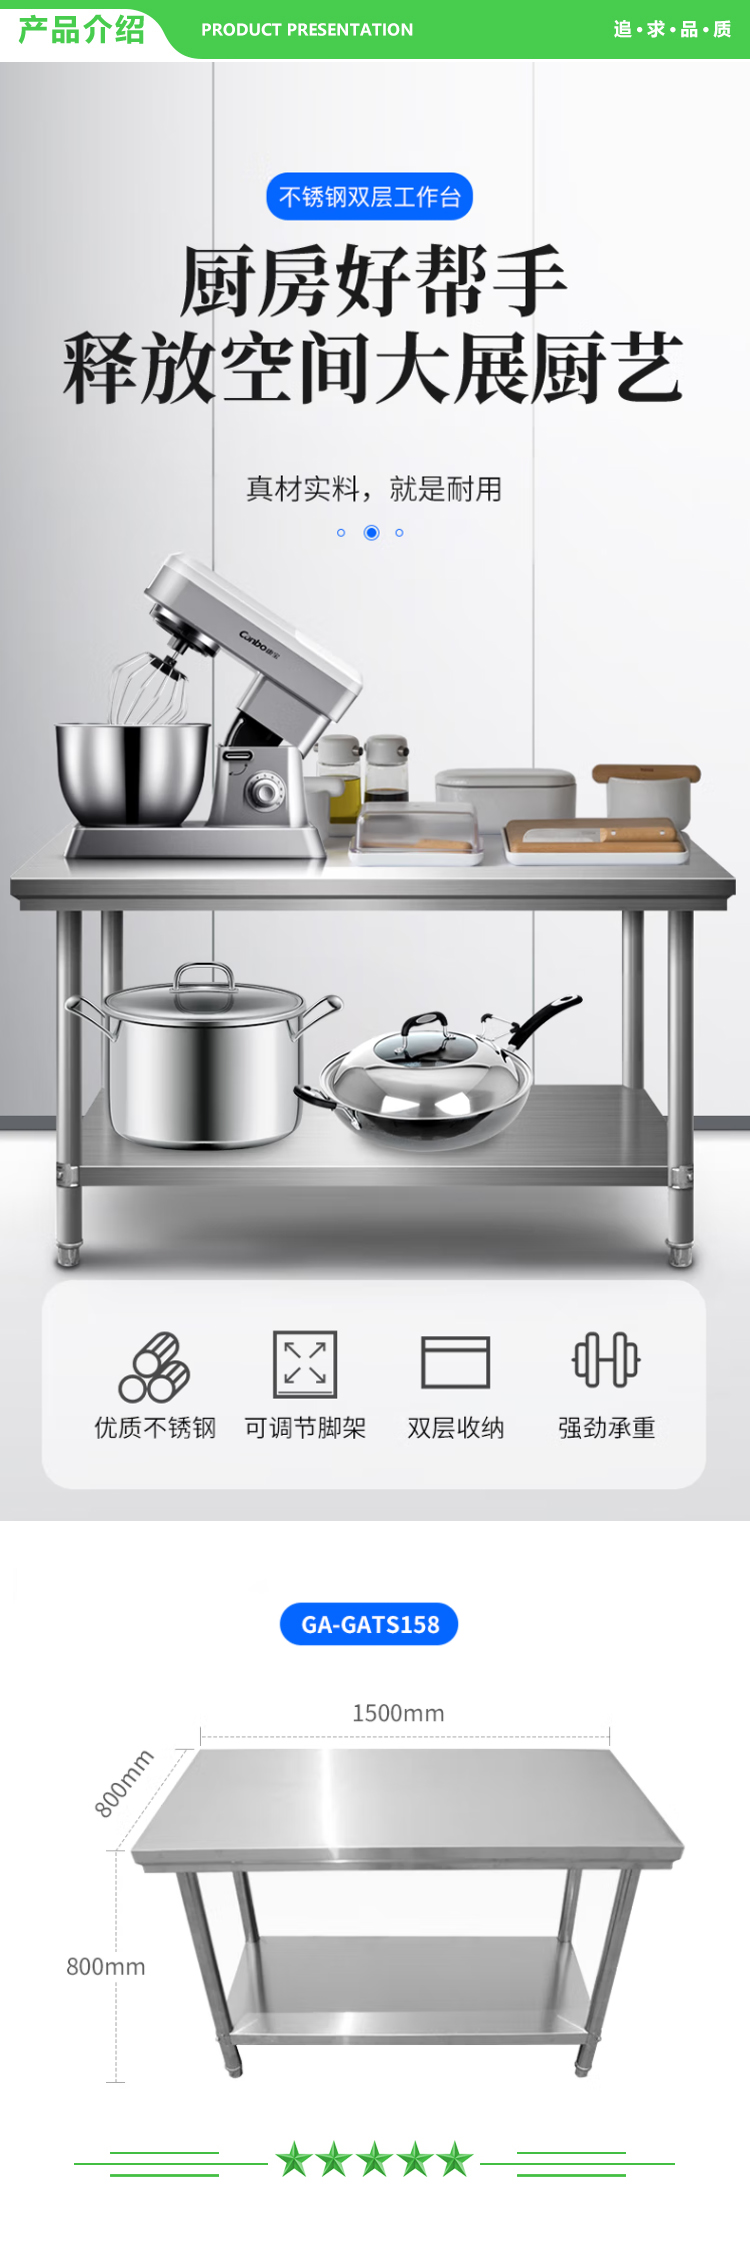 康宝 Canbo CA-GATS158 加厚不锈钢双层工作台商用 食堂后厨餐厅专用简易耐用工作台 .jpg